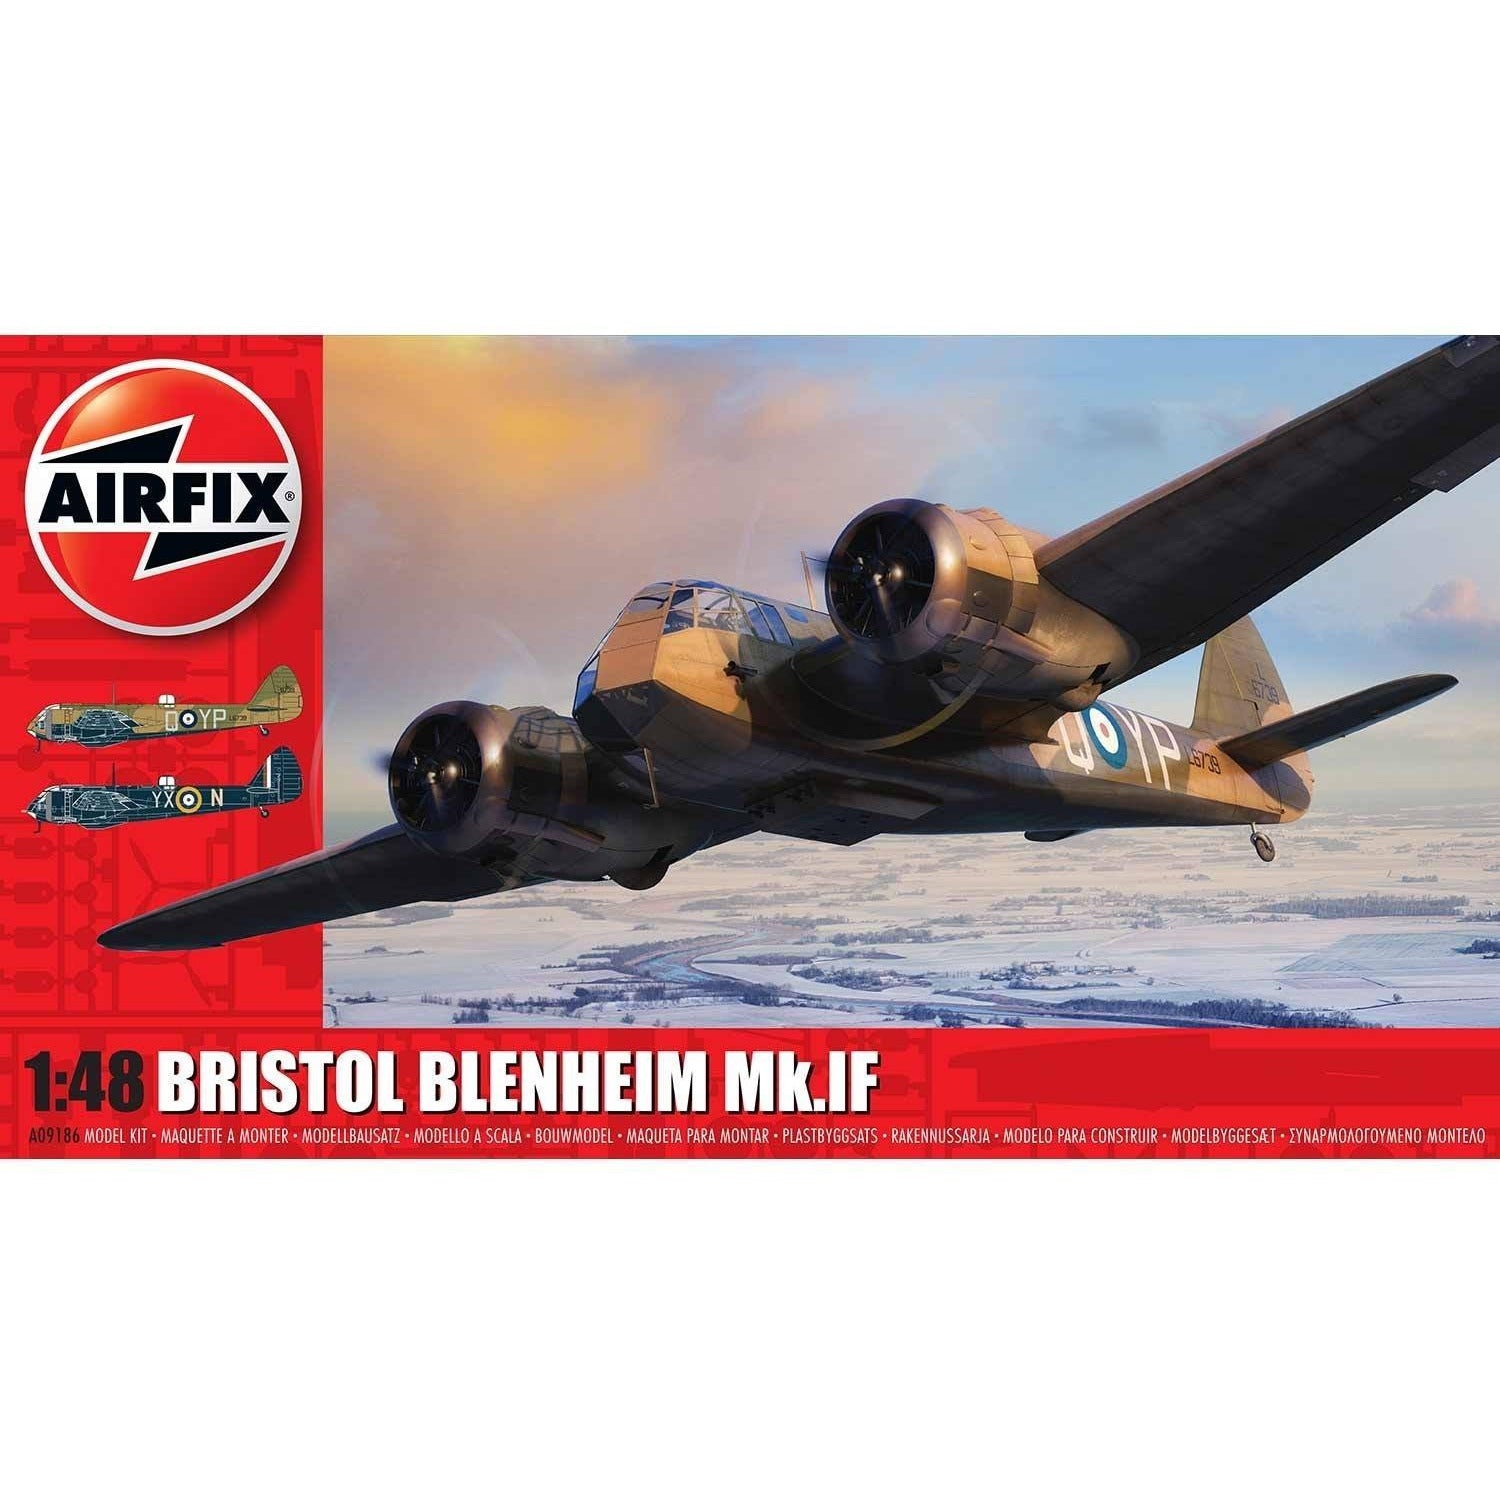 Bristol Blenheim Mk. IF 1/48 by Airfix